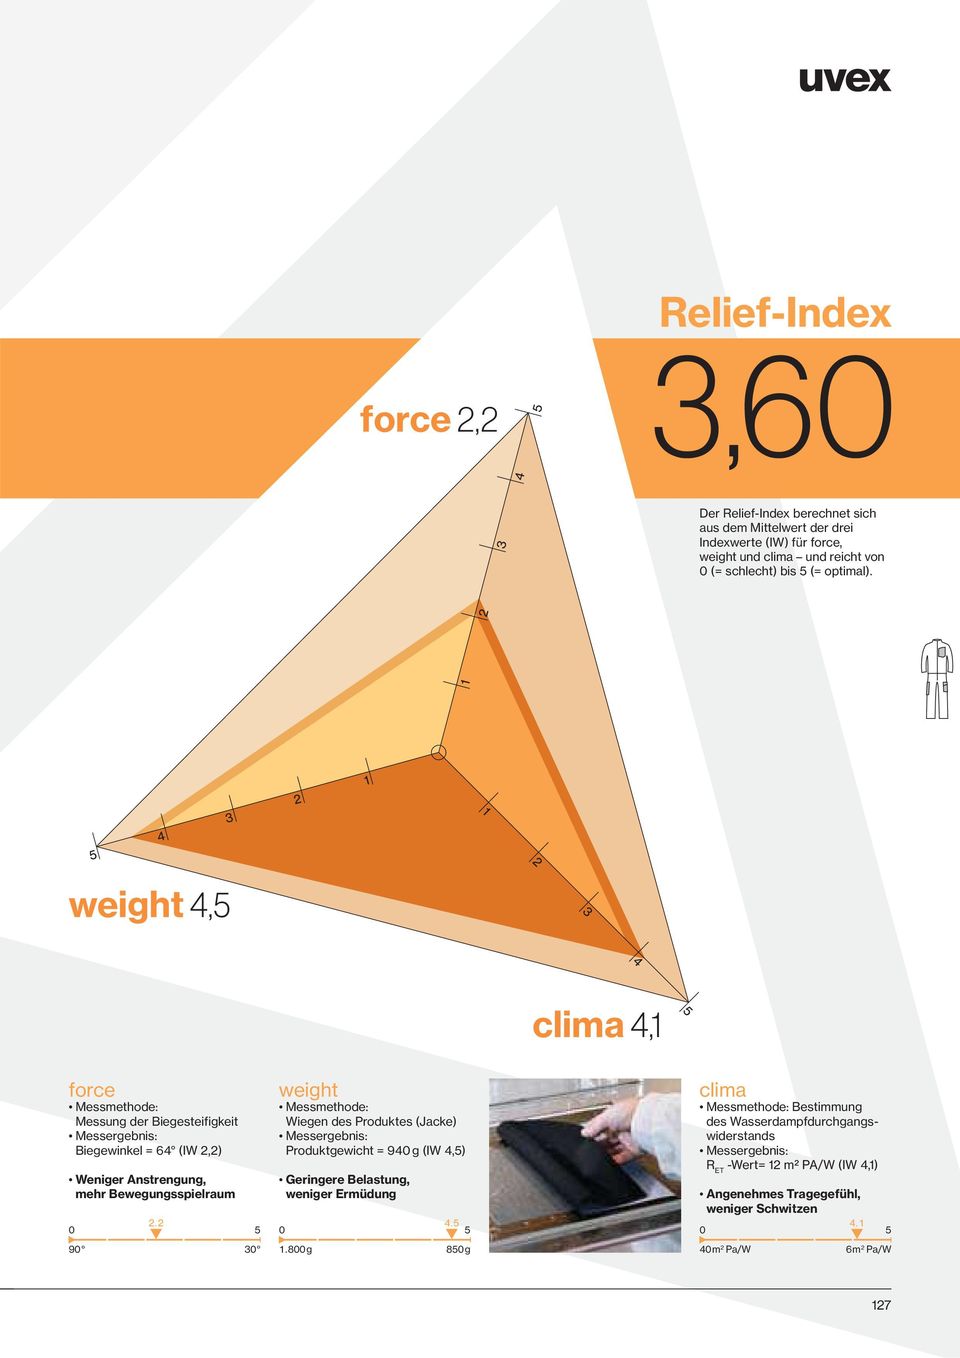 2 4.5 5 0 5 30 weight Messmethode: Wiegen des Produktes (Jacke) Messergebnis: Produktgewicht = 940 g (IW 4,5) Geringere Belastung, weniger Ermüdung 1.